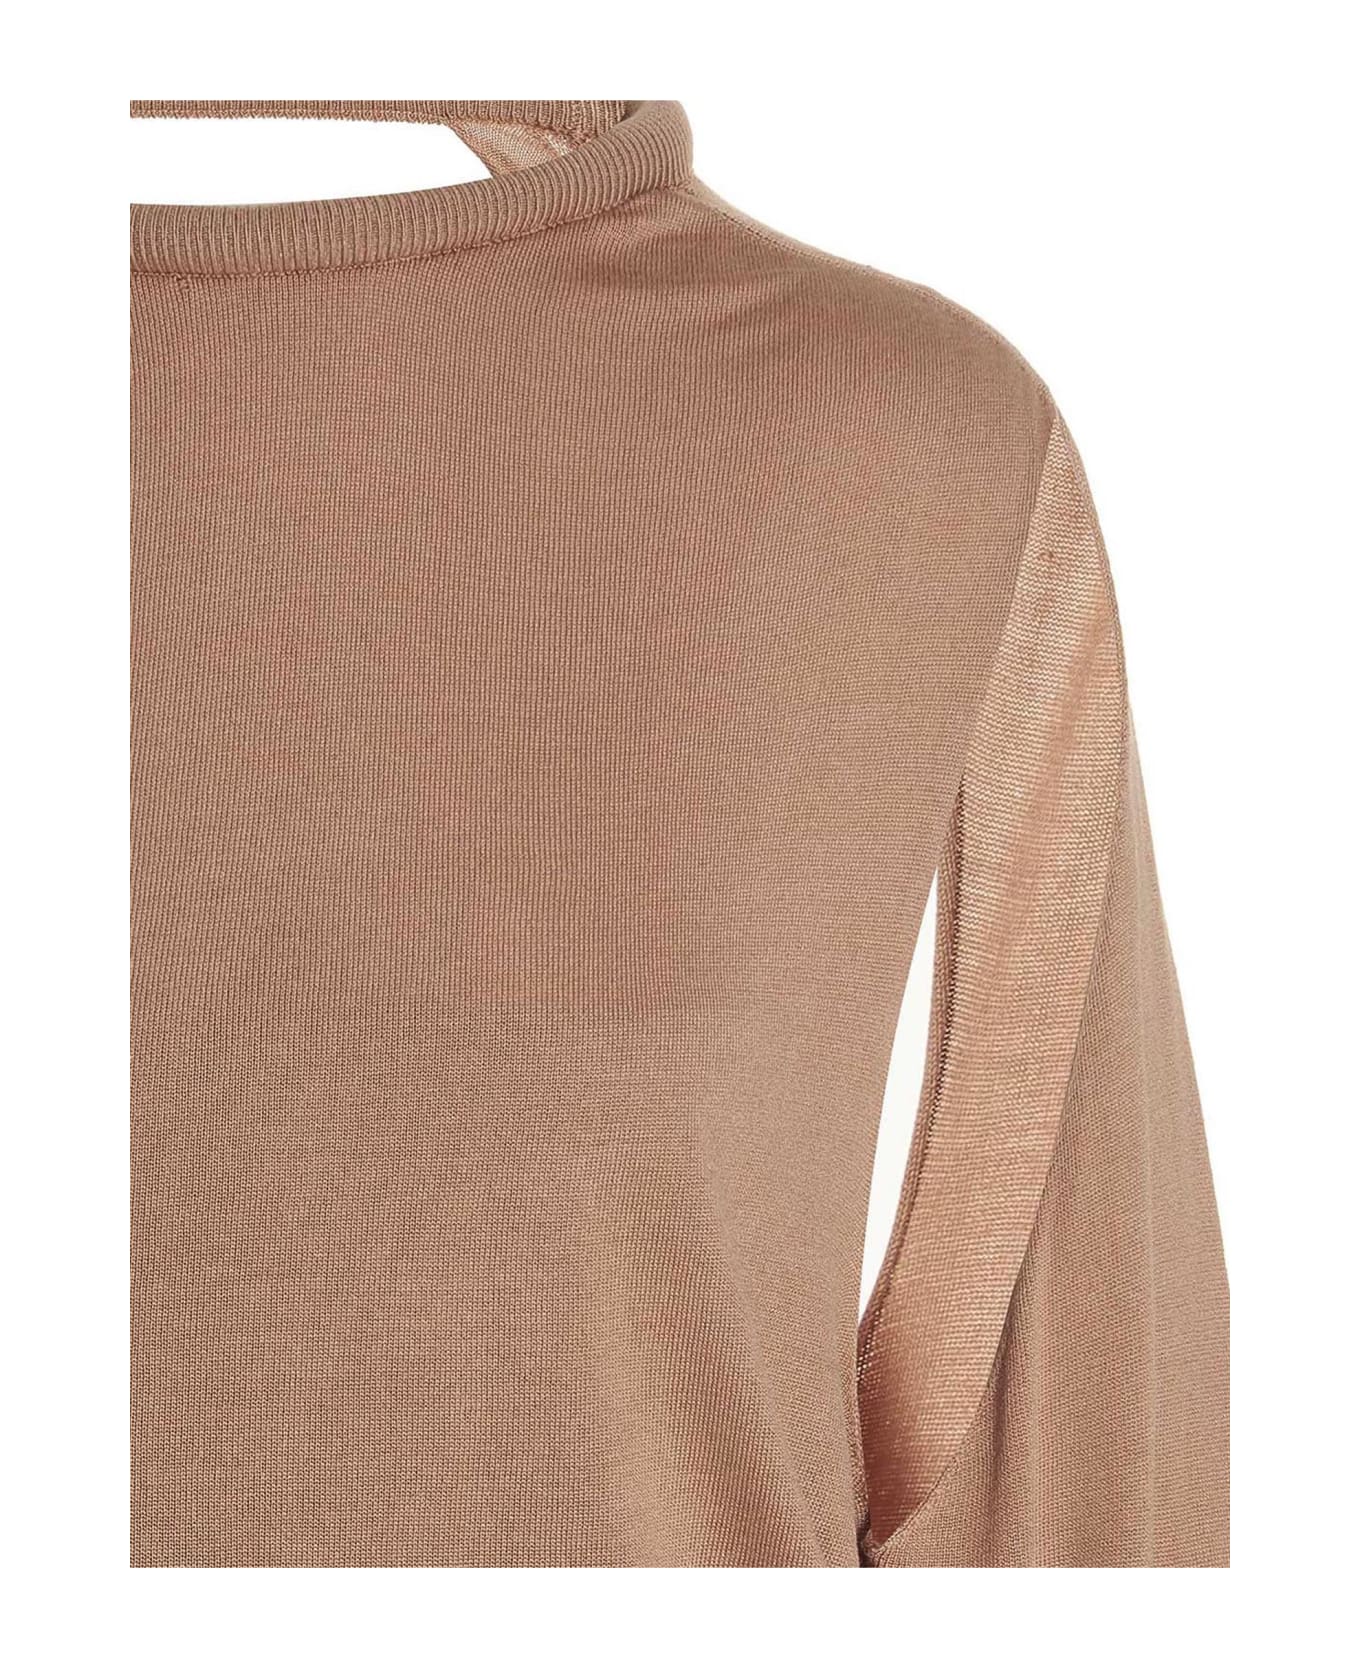 Ramael Cut Out Insert Top Sweater - Beige ニットウェア